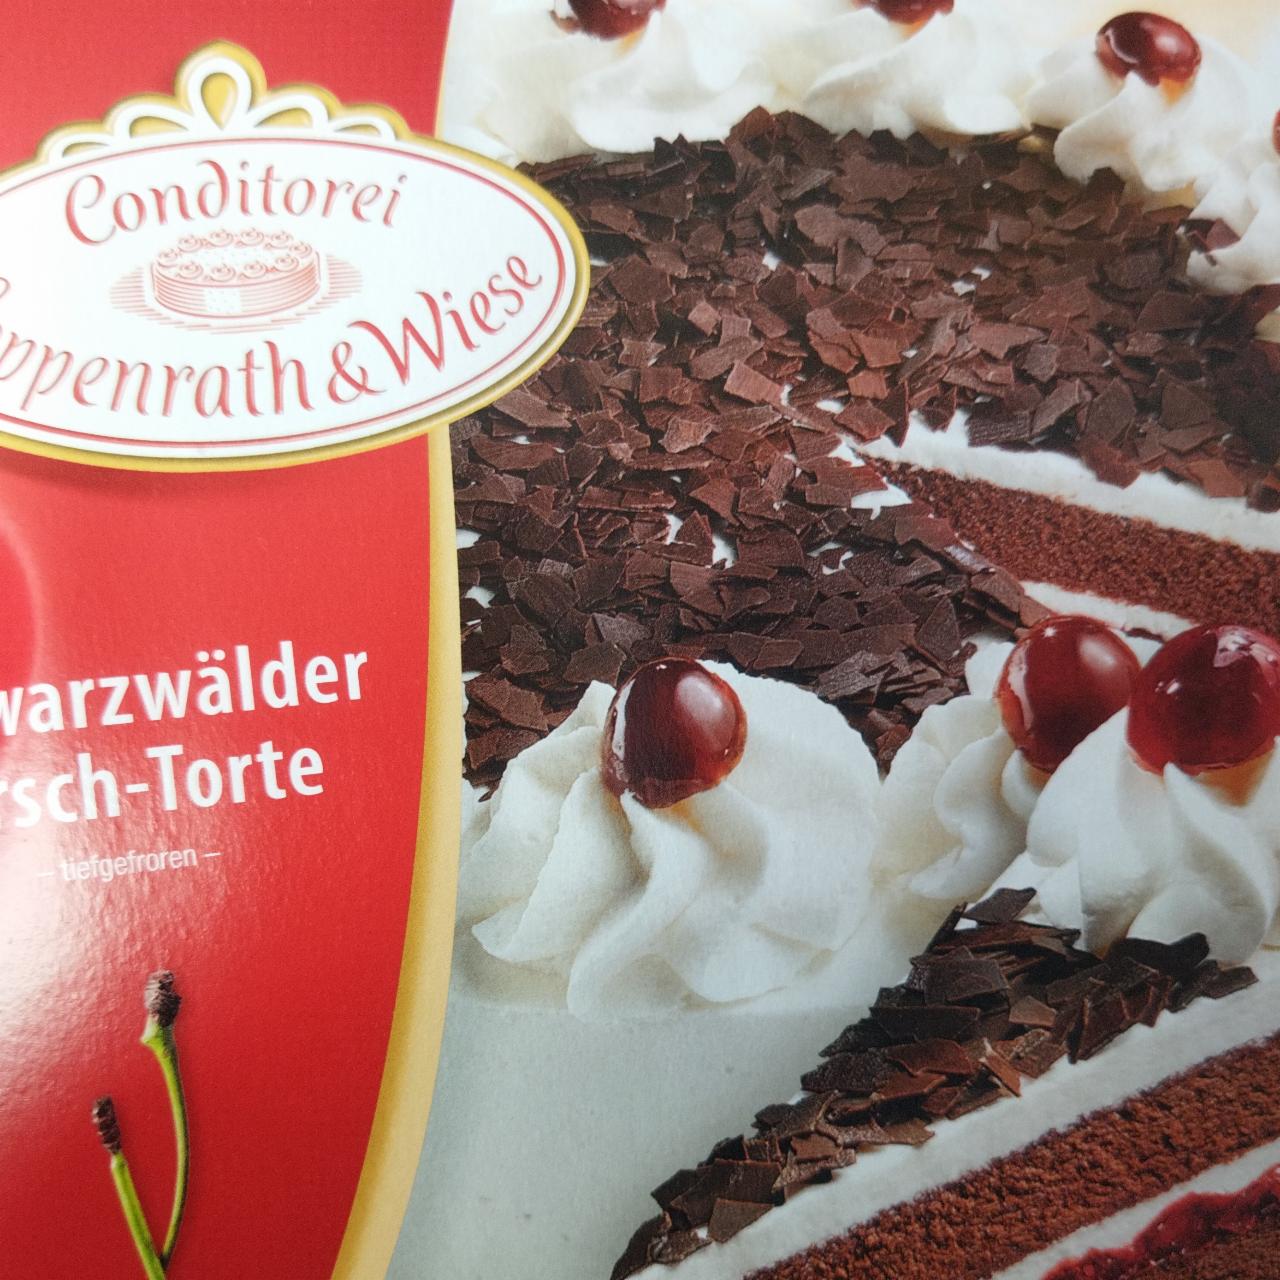 Zdjęcia - Schwardwälder Kirsch-Torte Conditorei Coppenrath & Wiese